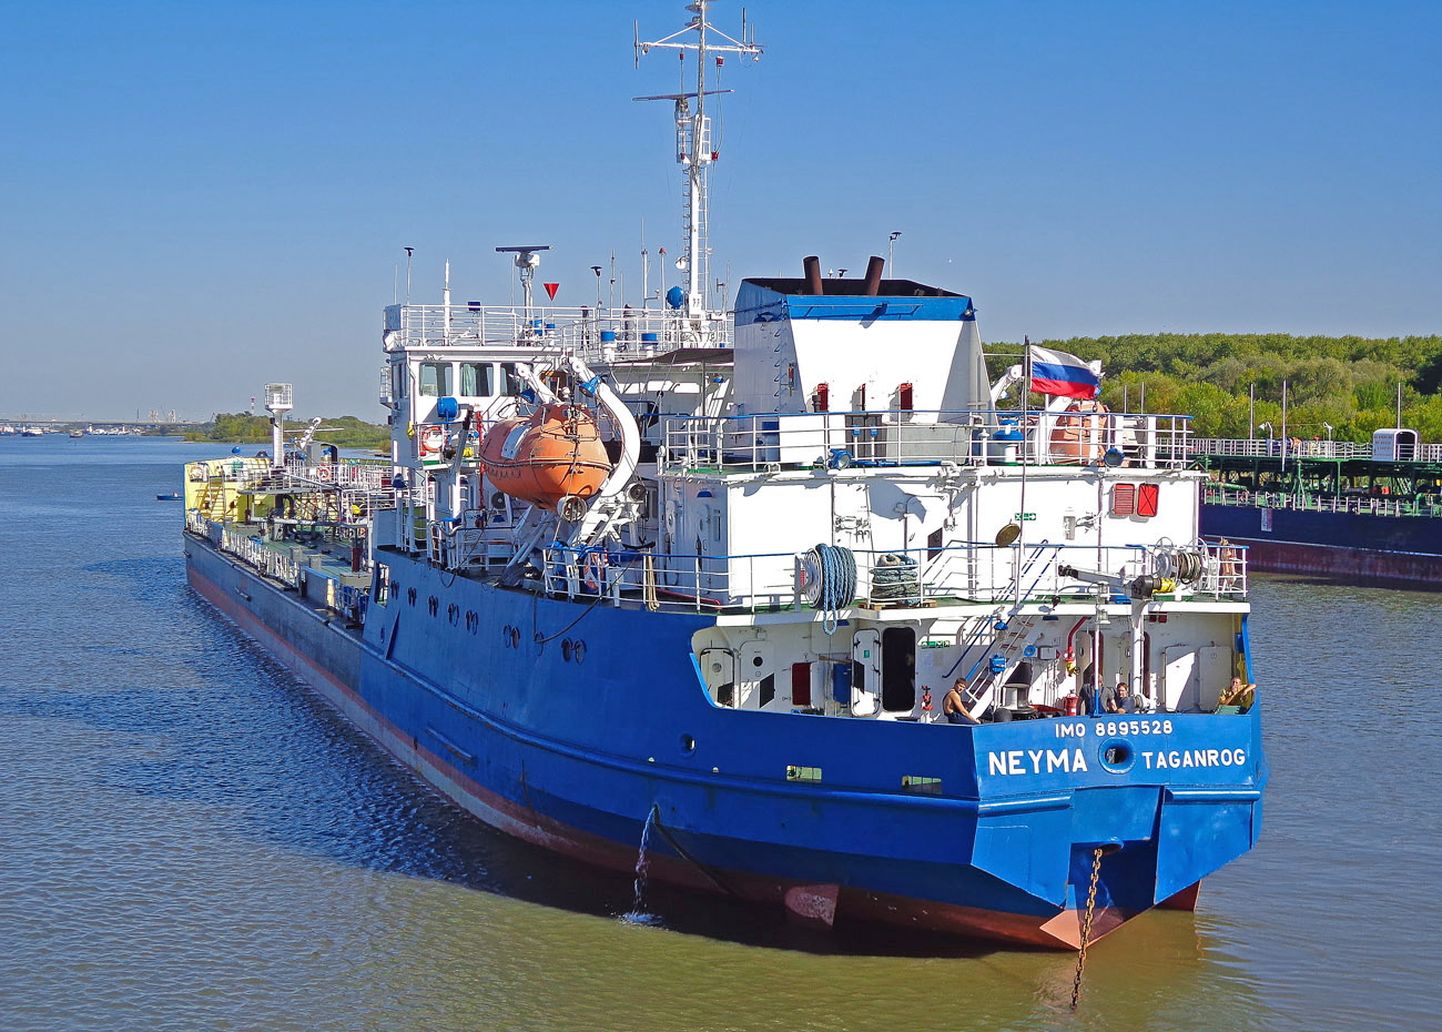 Venemaa tanker Neima, mis vaatamata ümbernimetamisele kinni peeti.